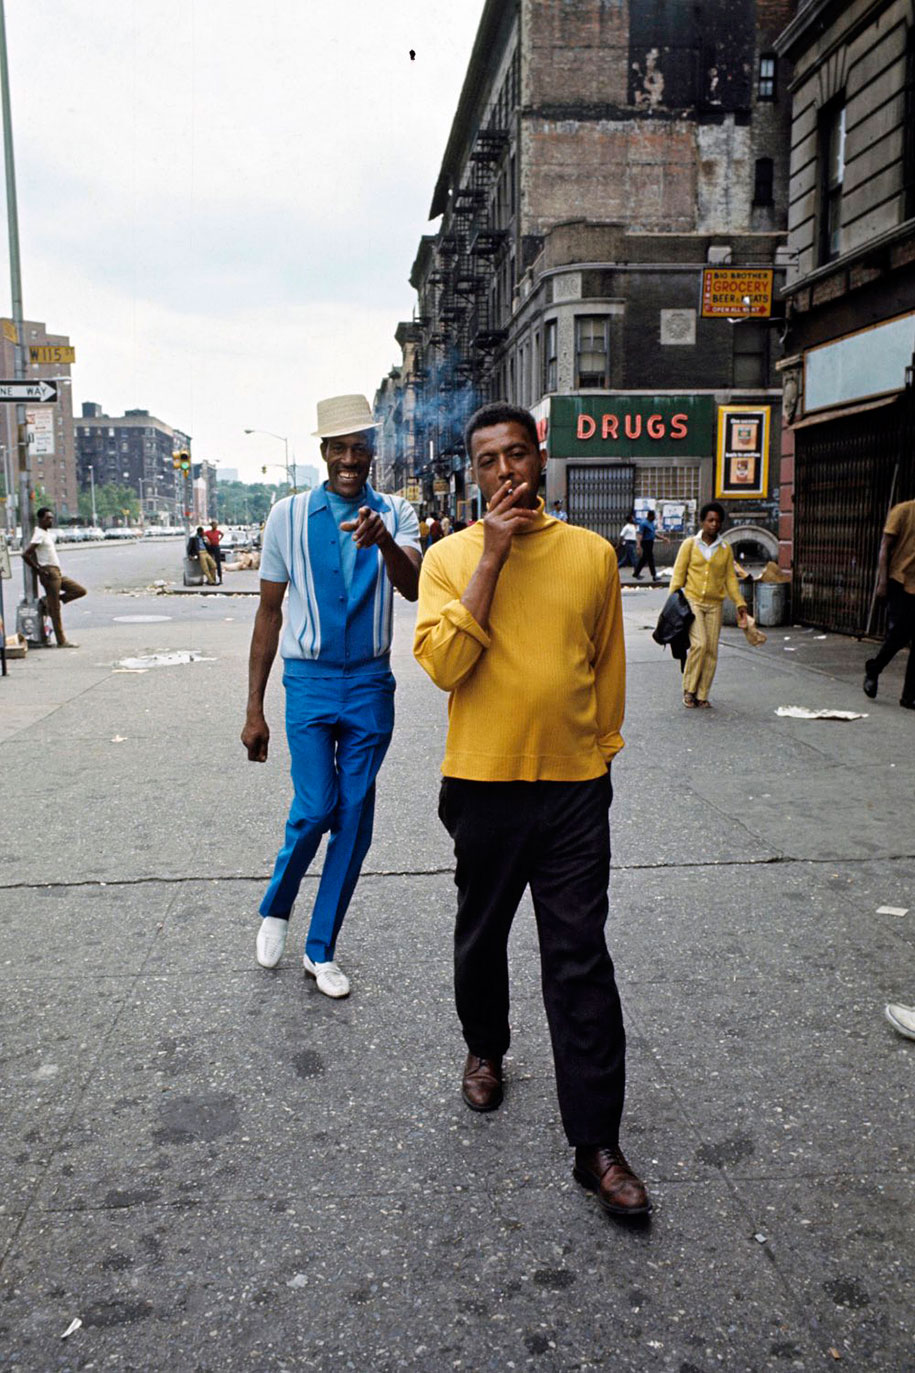 The 1970s Harlem by Jack Garofalo_1